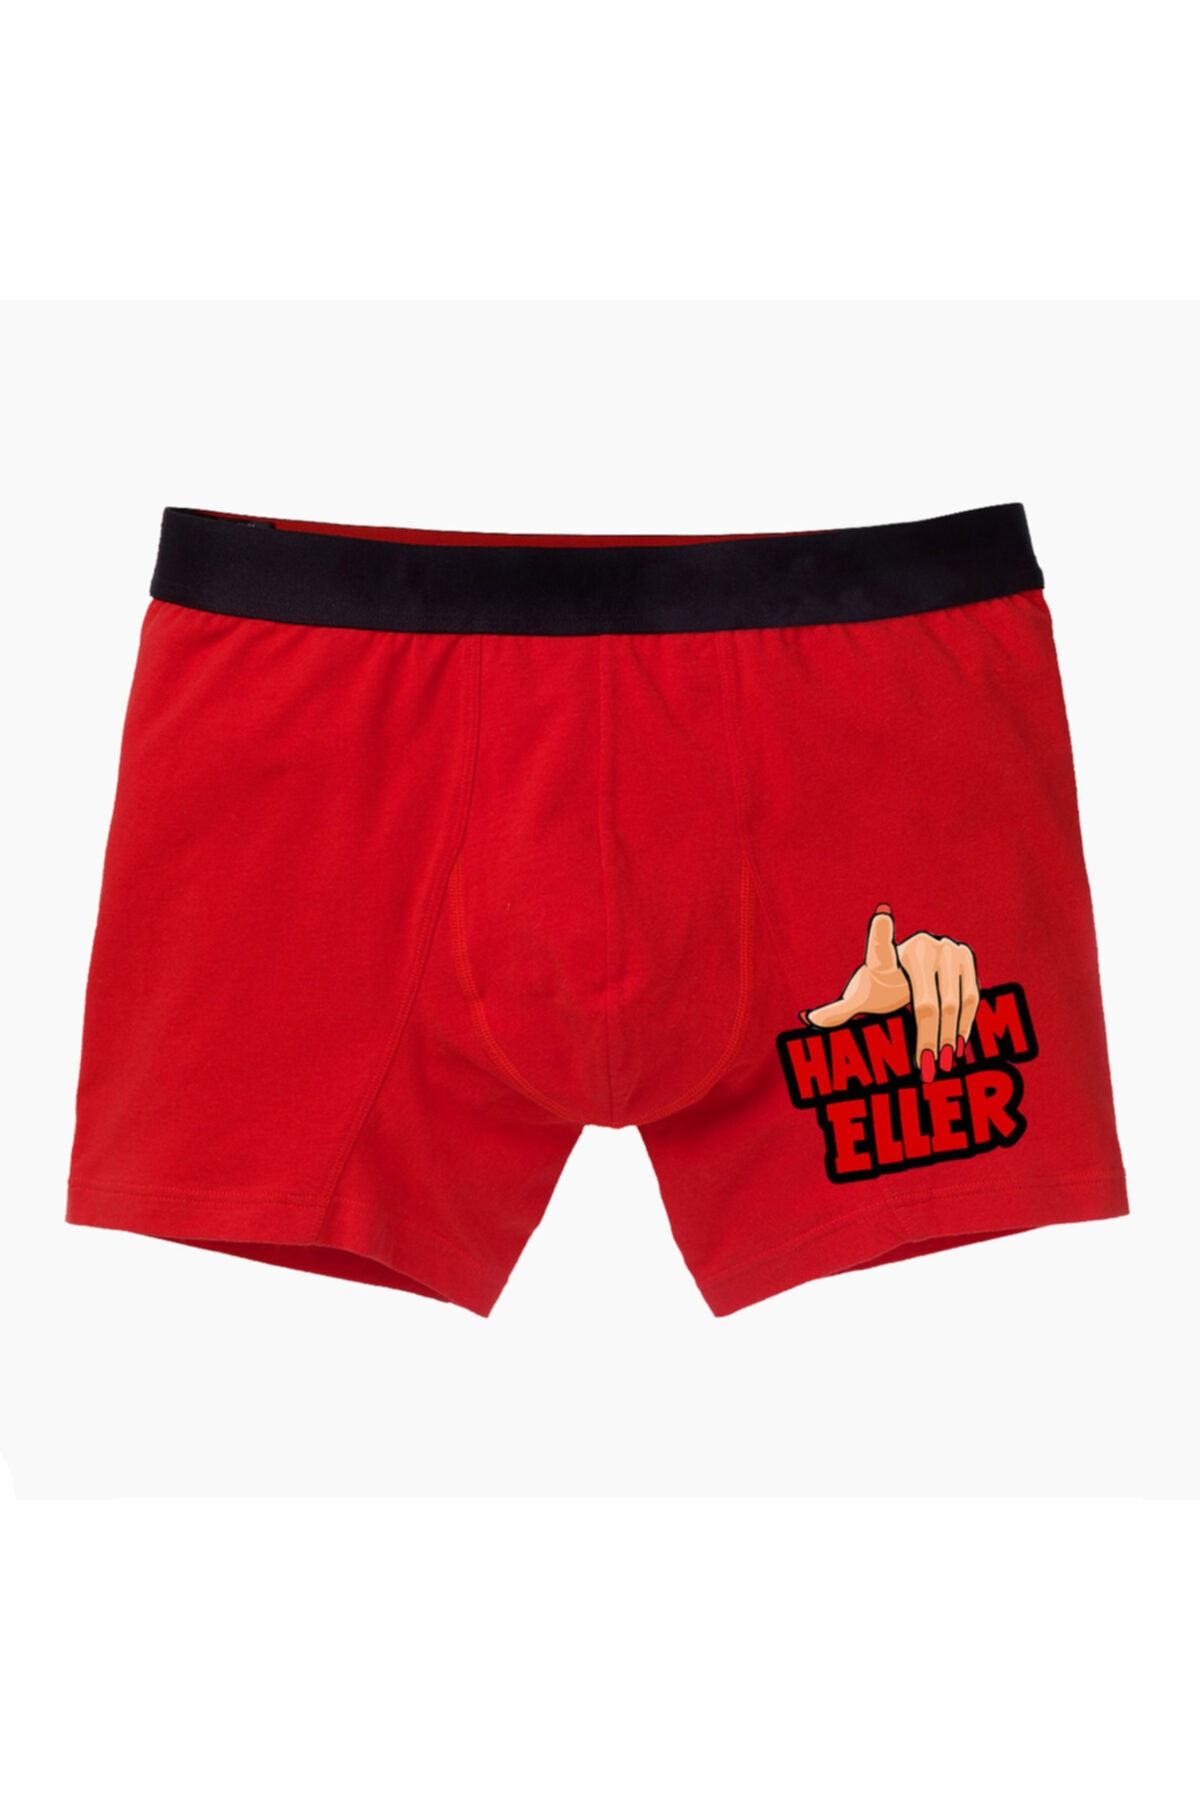 modacix Hanımeller Kırmızı Boxer - Komik Baksır - Erkek Eşe Hediyelik Eğlenceli Baskılı Erkek Baksır